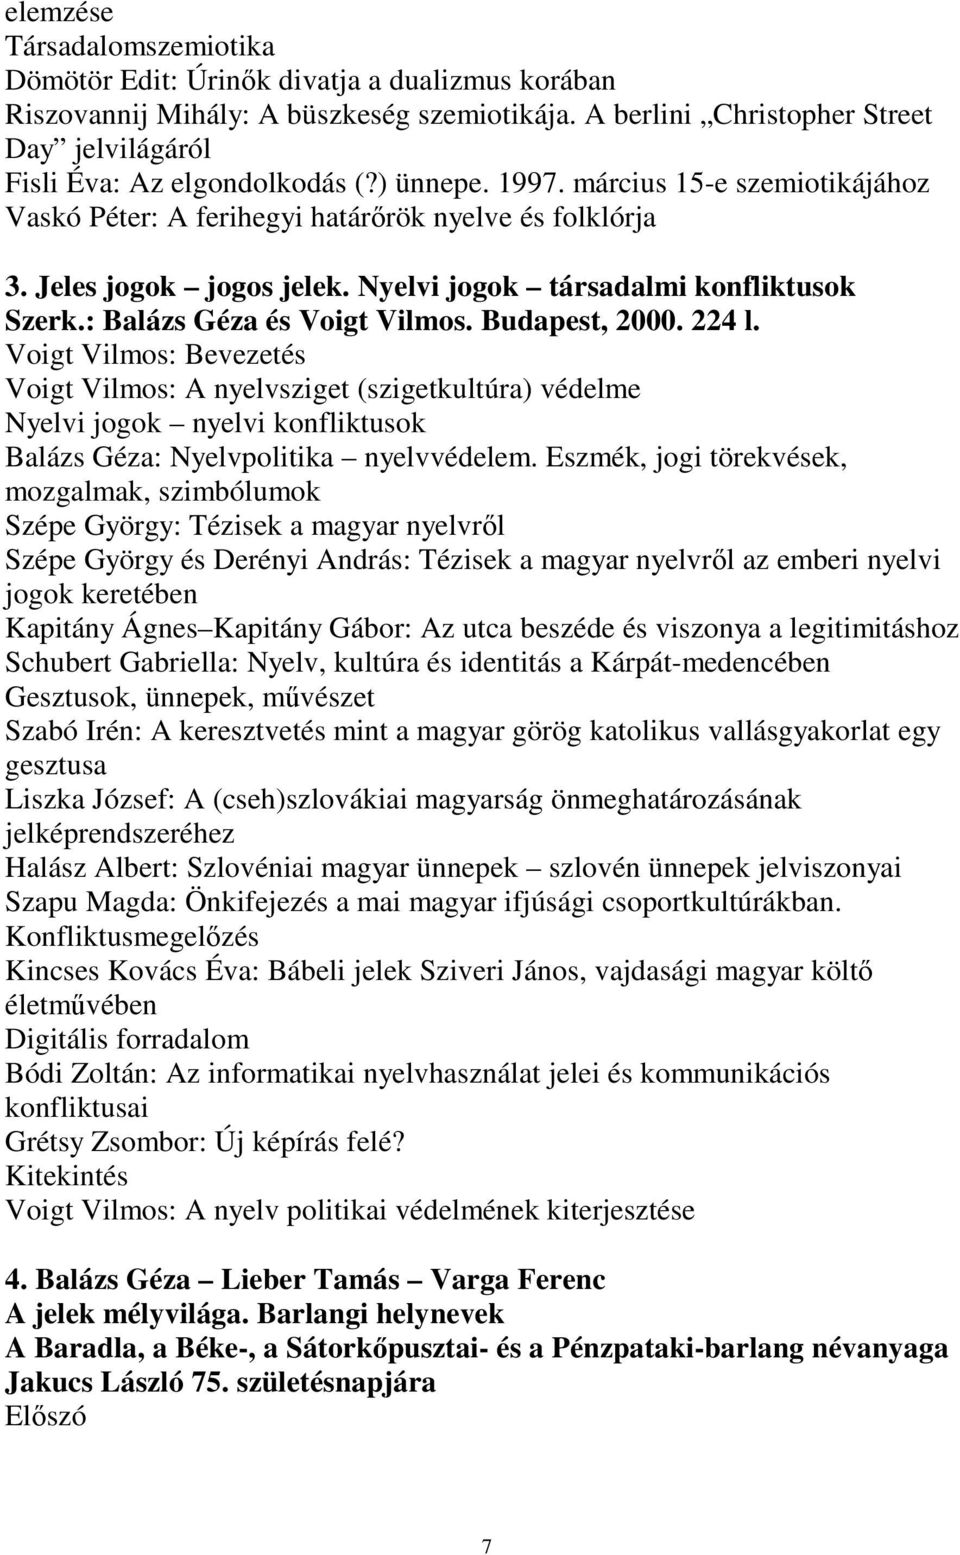 Jeles jogok jogos jelek. Nyelvi jogok társadalmi konfliktusok Szerk.: Balázs Géza és Voigt Vilmos. Budapest, 2000. 224 l.